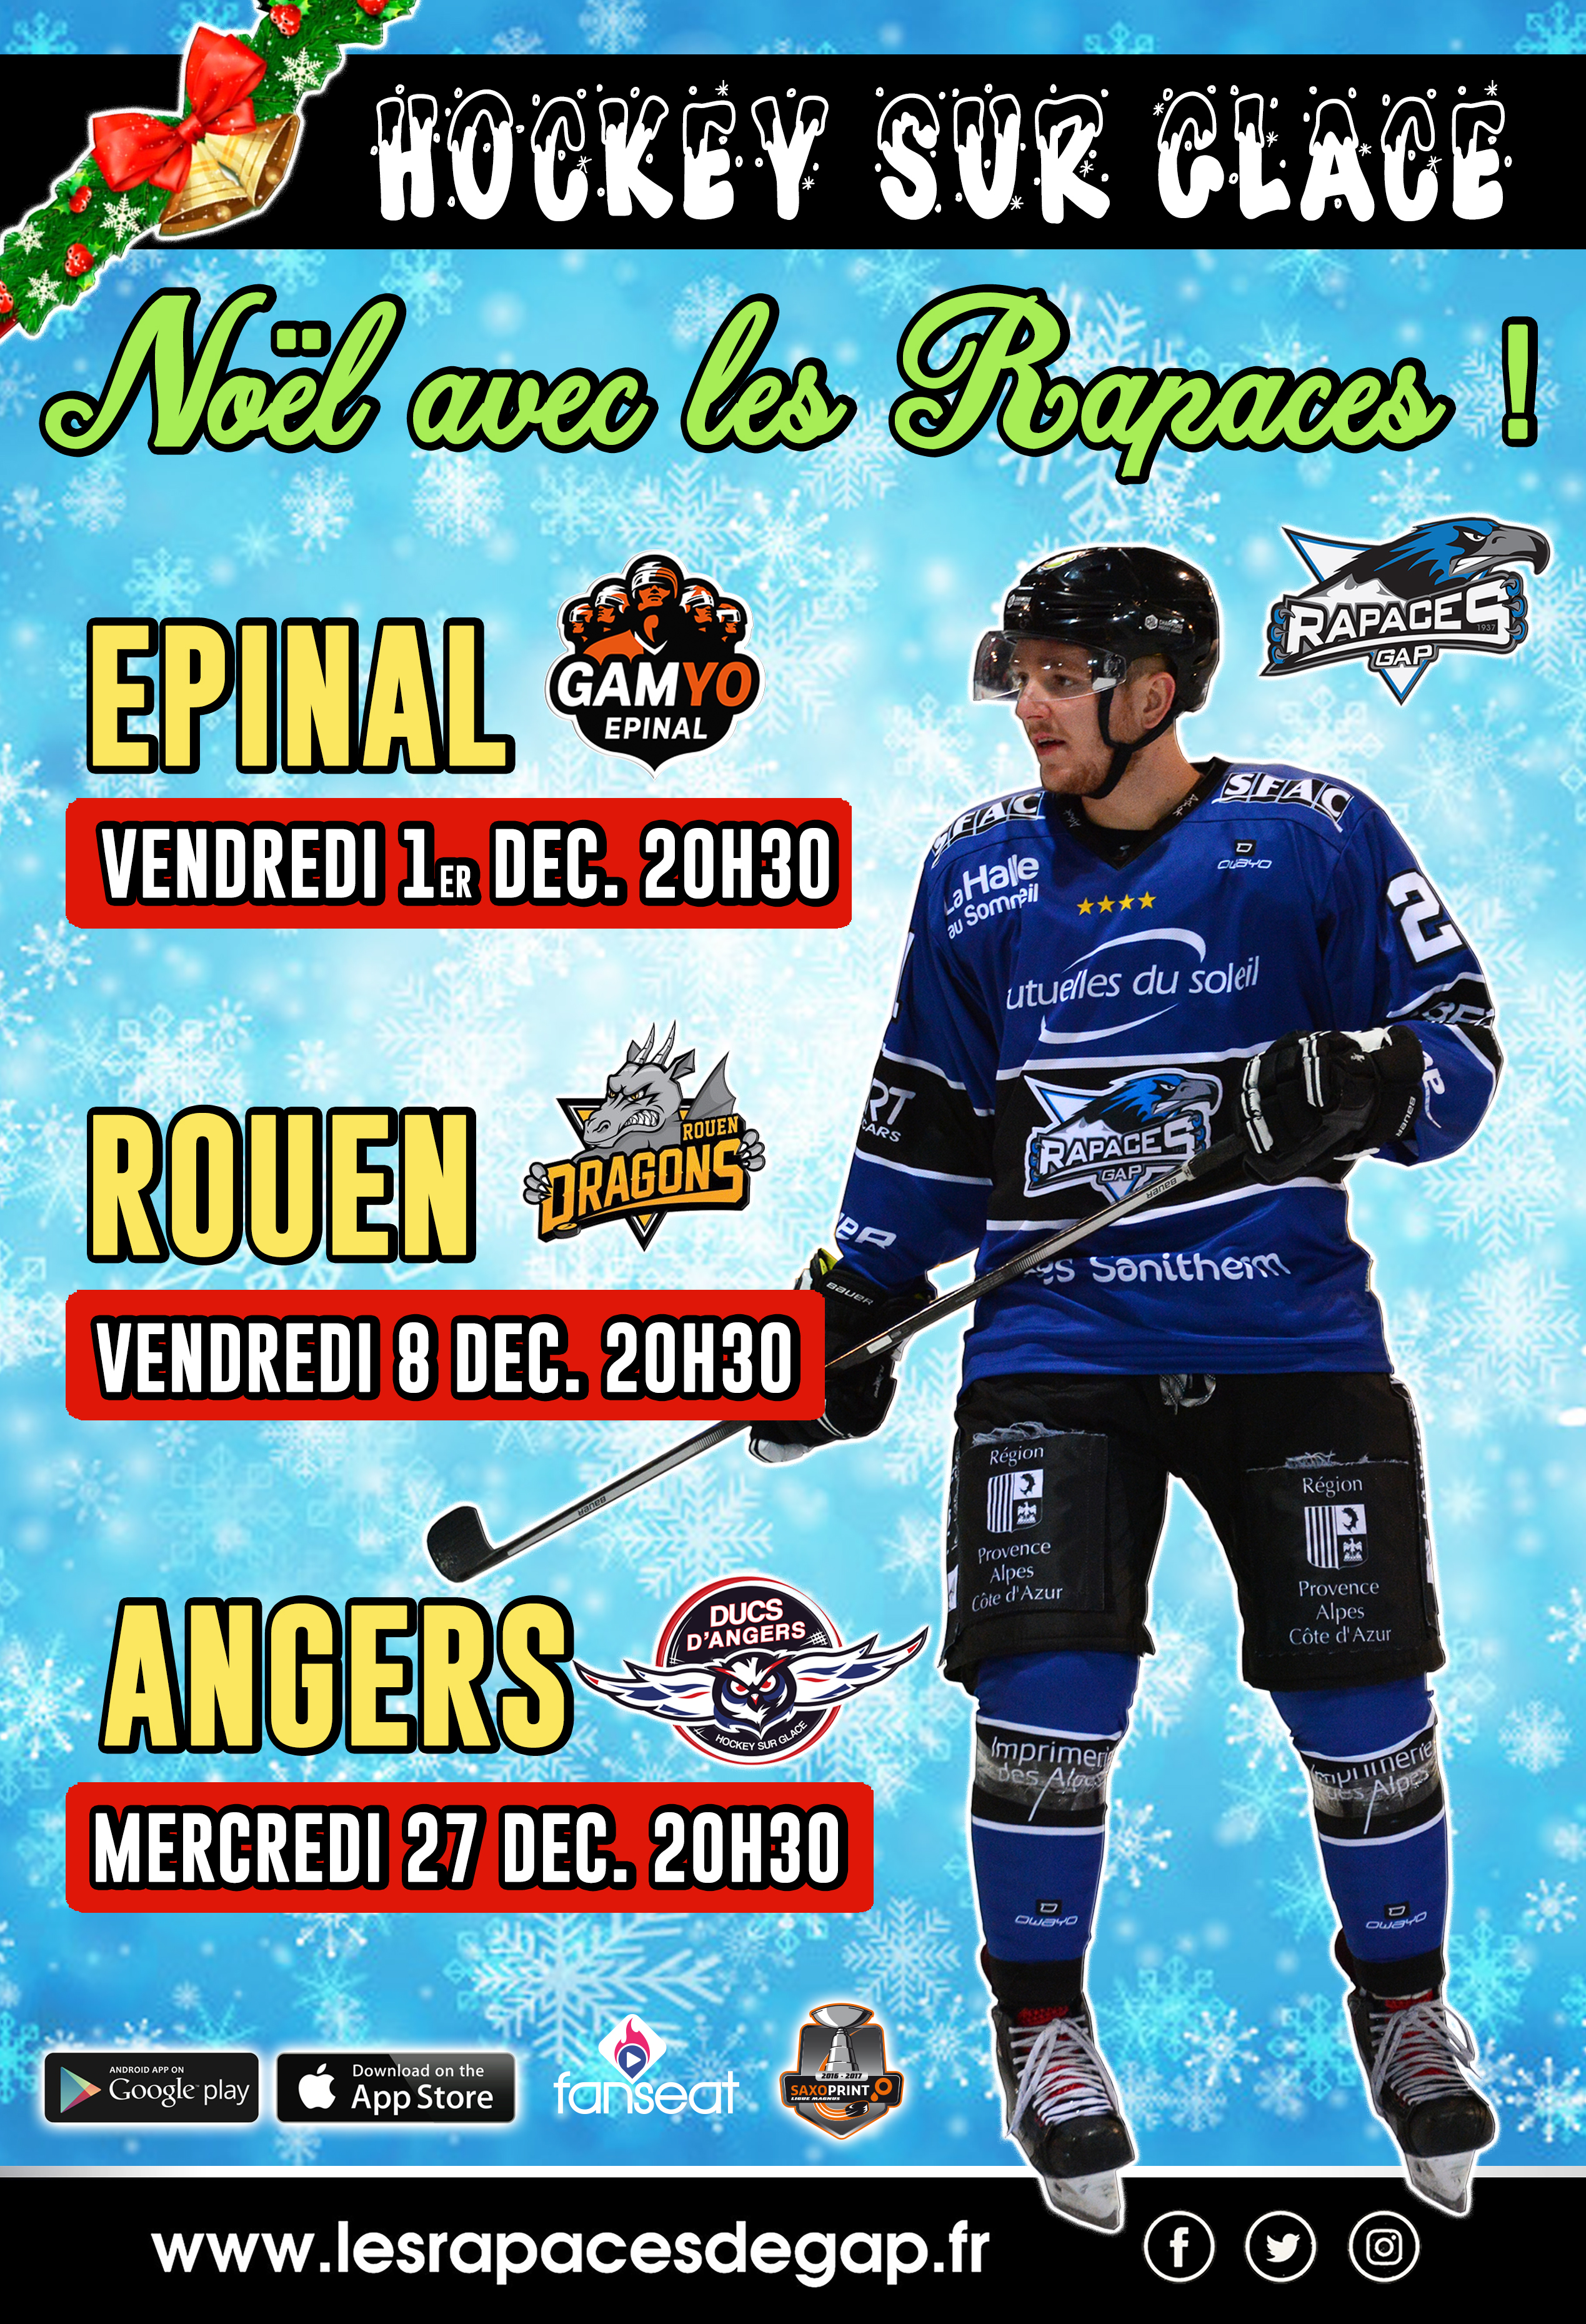 Match de Hockey sur glace Gap-Angers le 27/12 à Gap